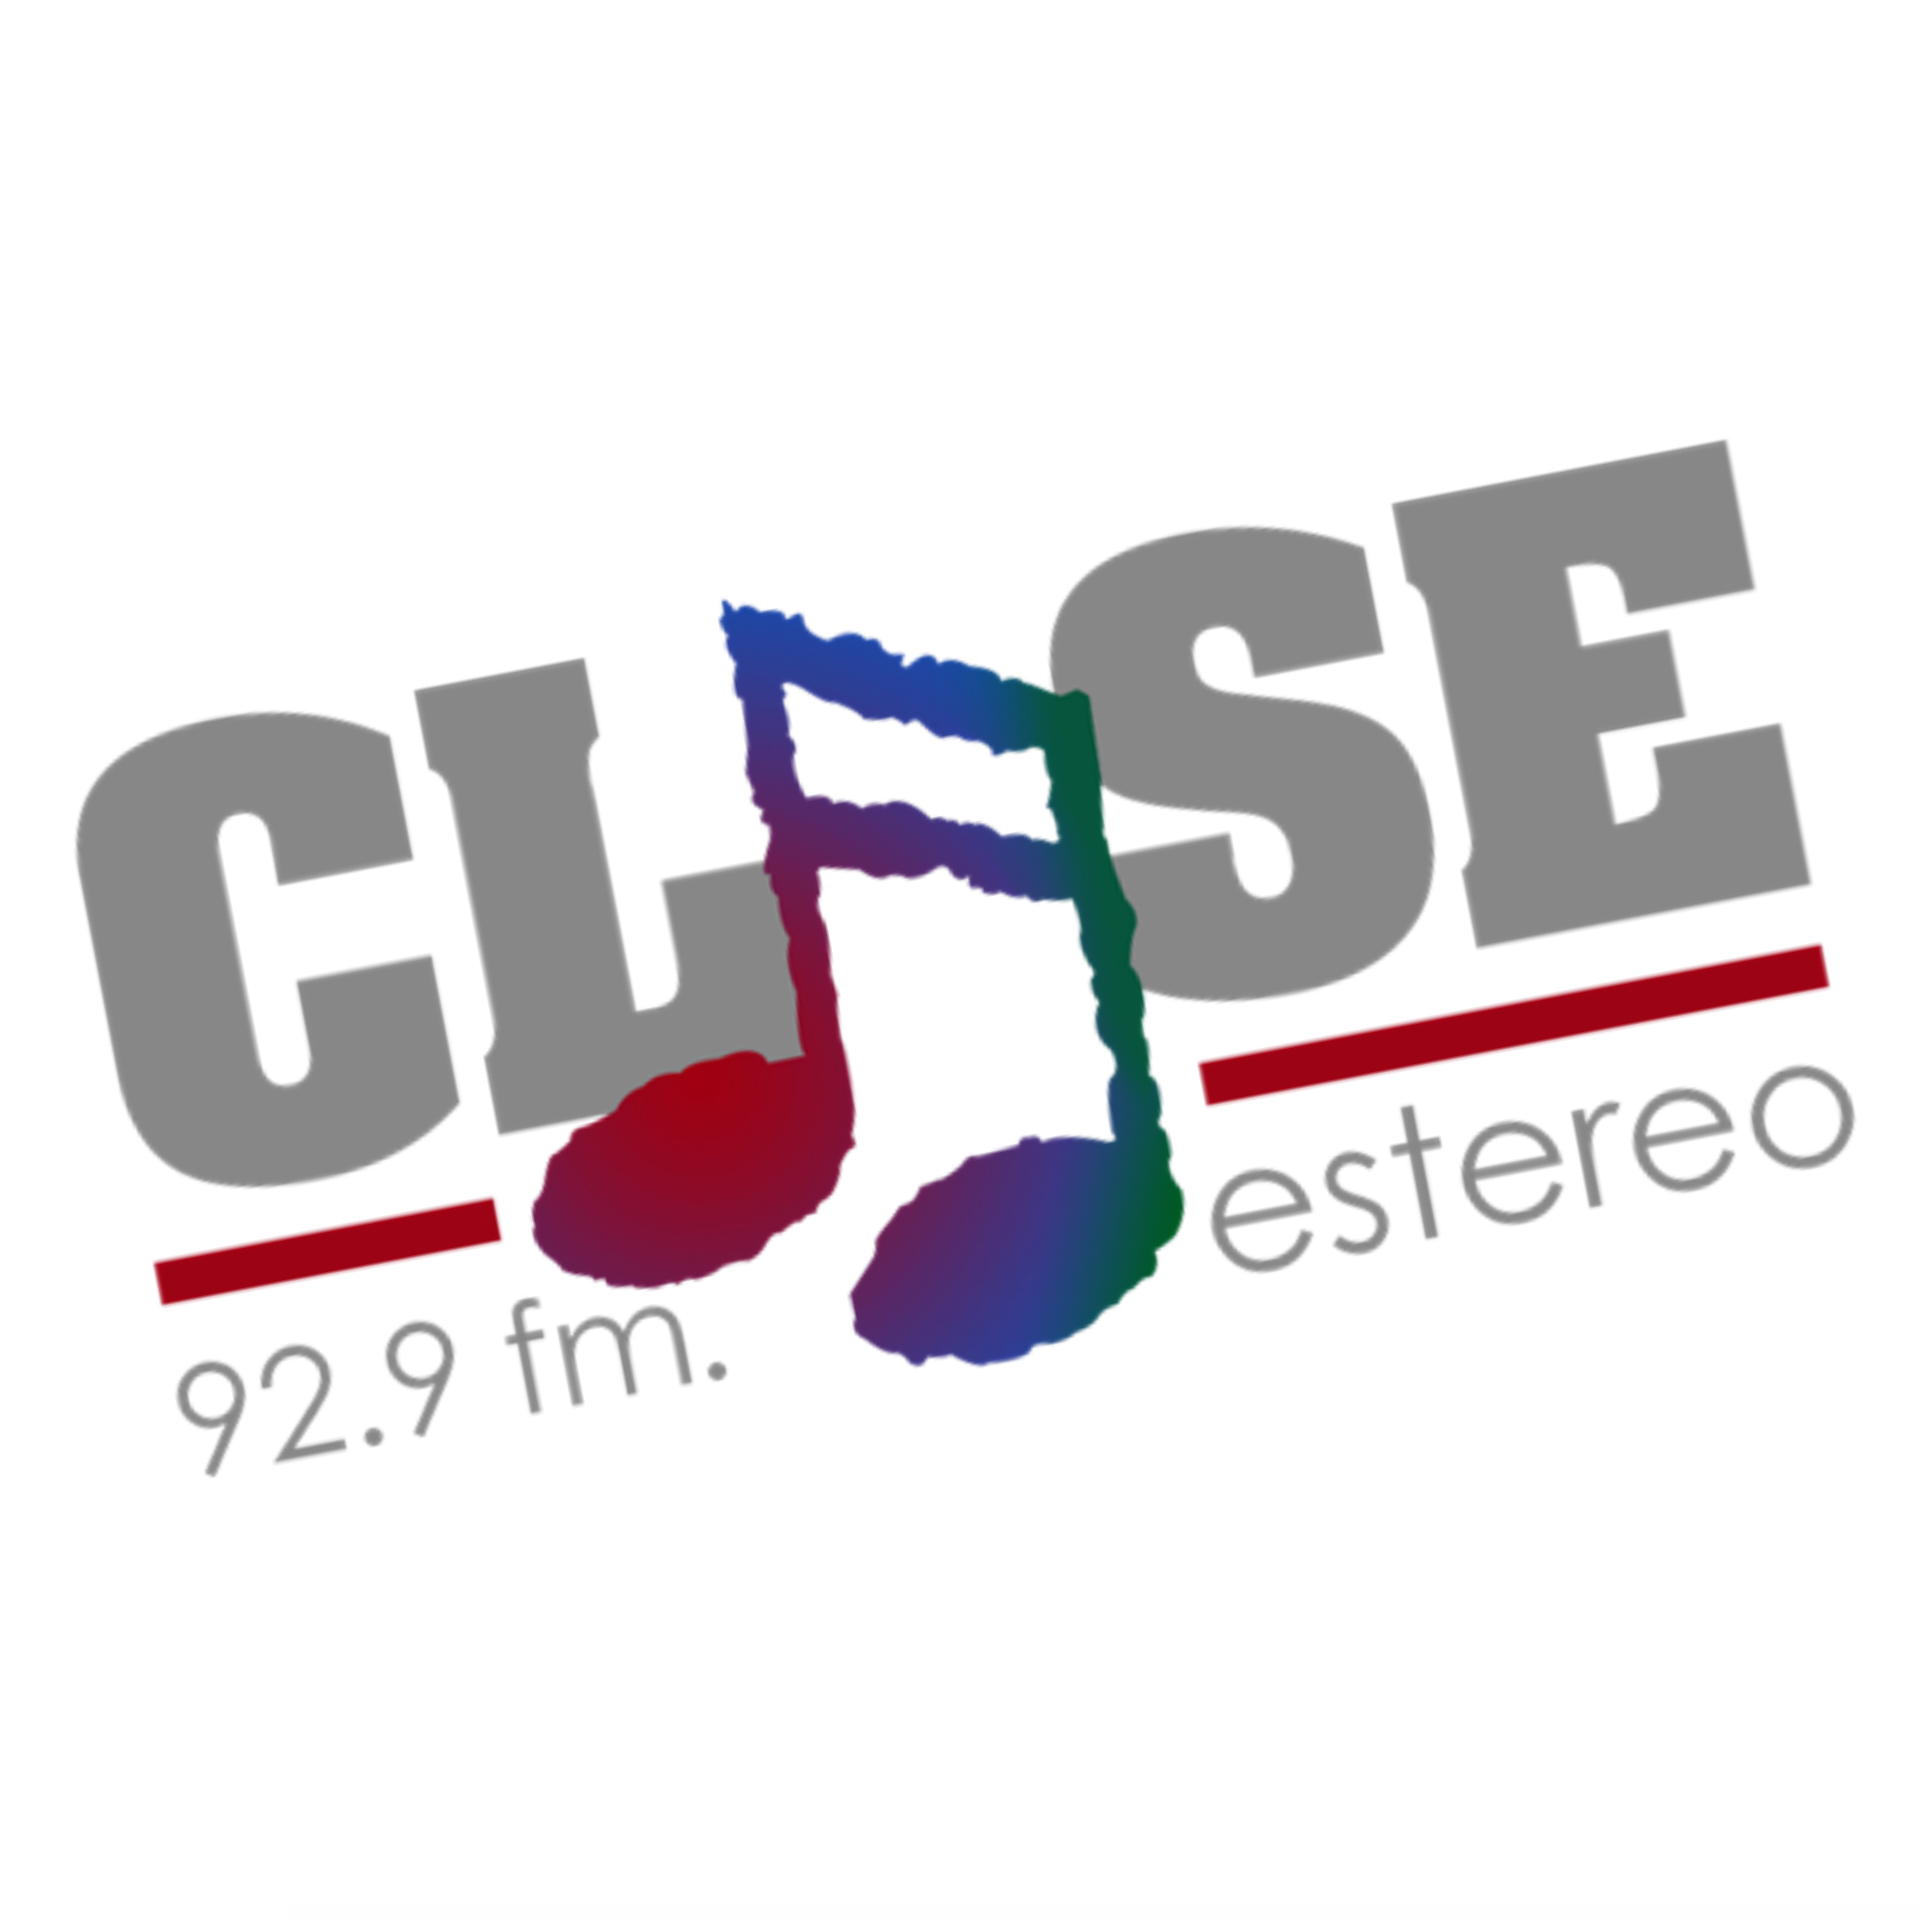 Listen to Estereo Clase 92.9 FM - No es viejo, es Clase